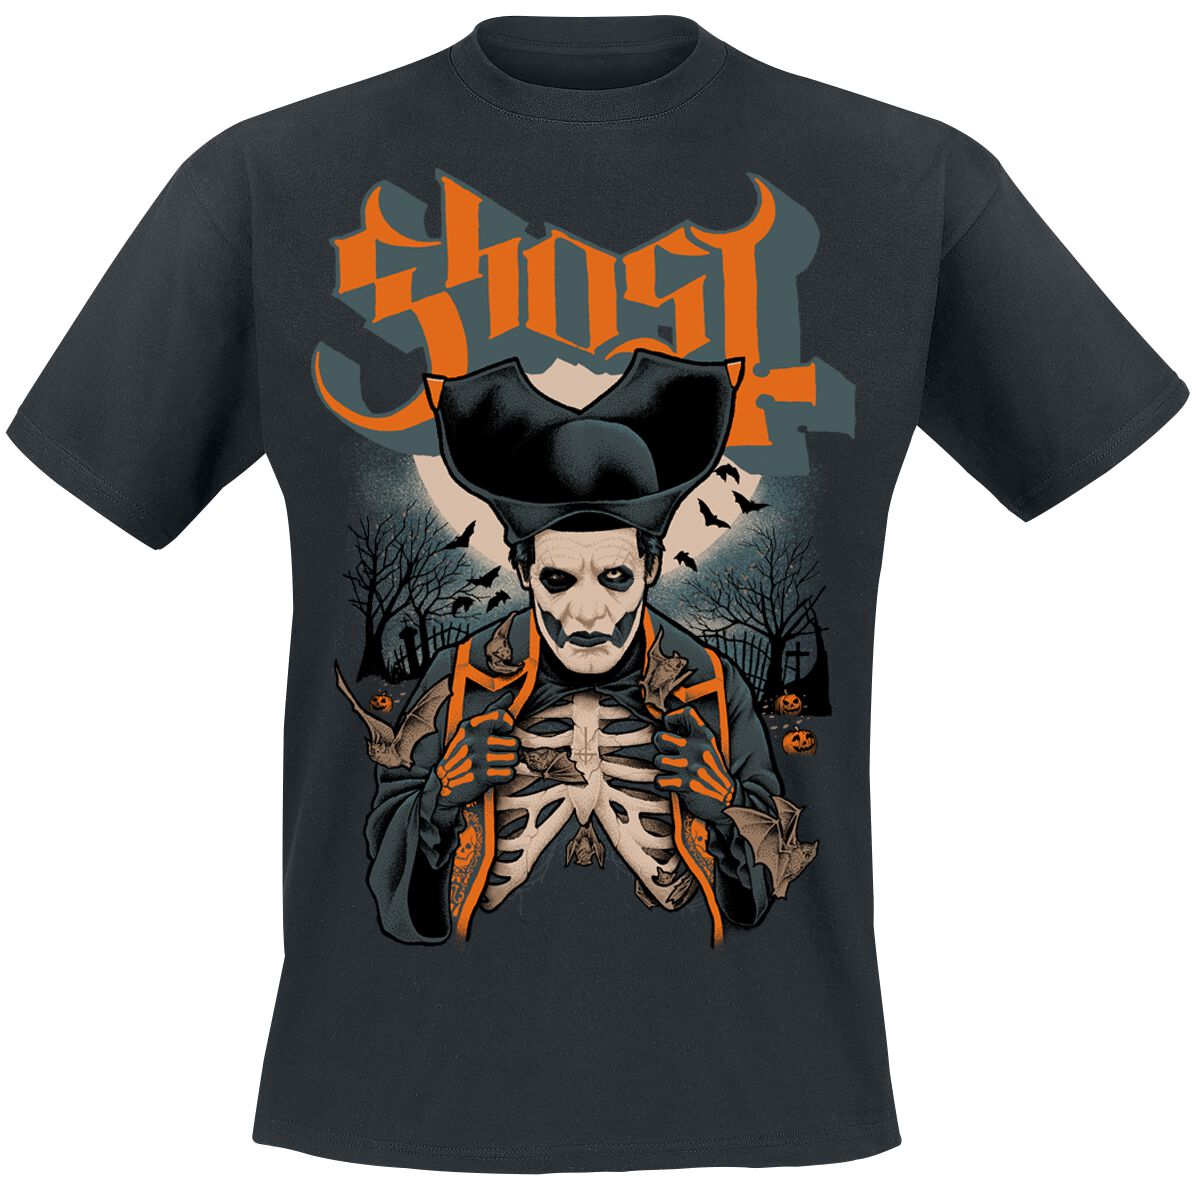 Ghost T-Shirt - Ribs & Bats - S bis 4XL - für Männer - Größe 3XL - schwarz  - Lizenziertes Merchandise!